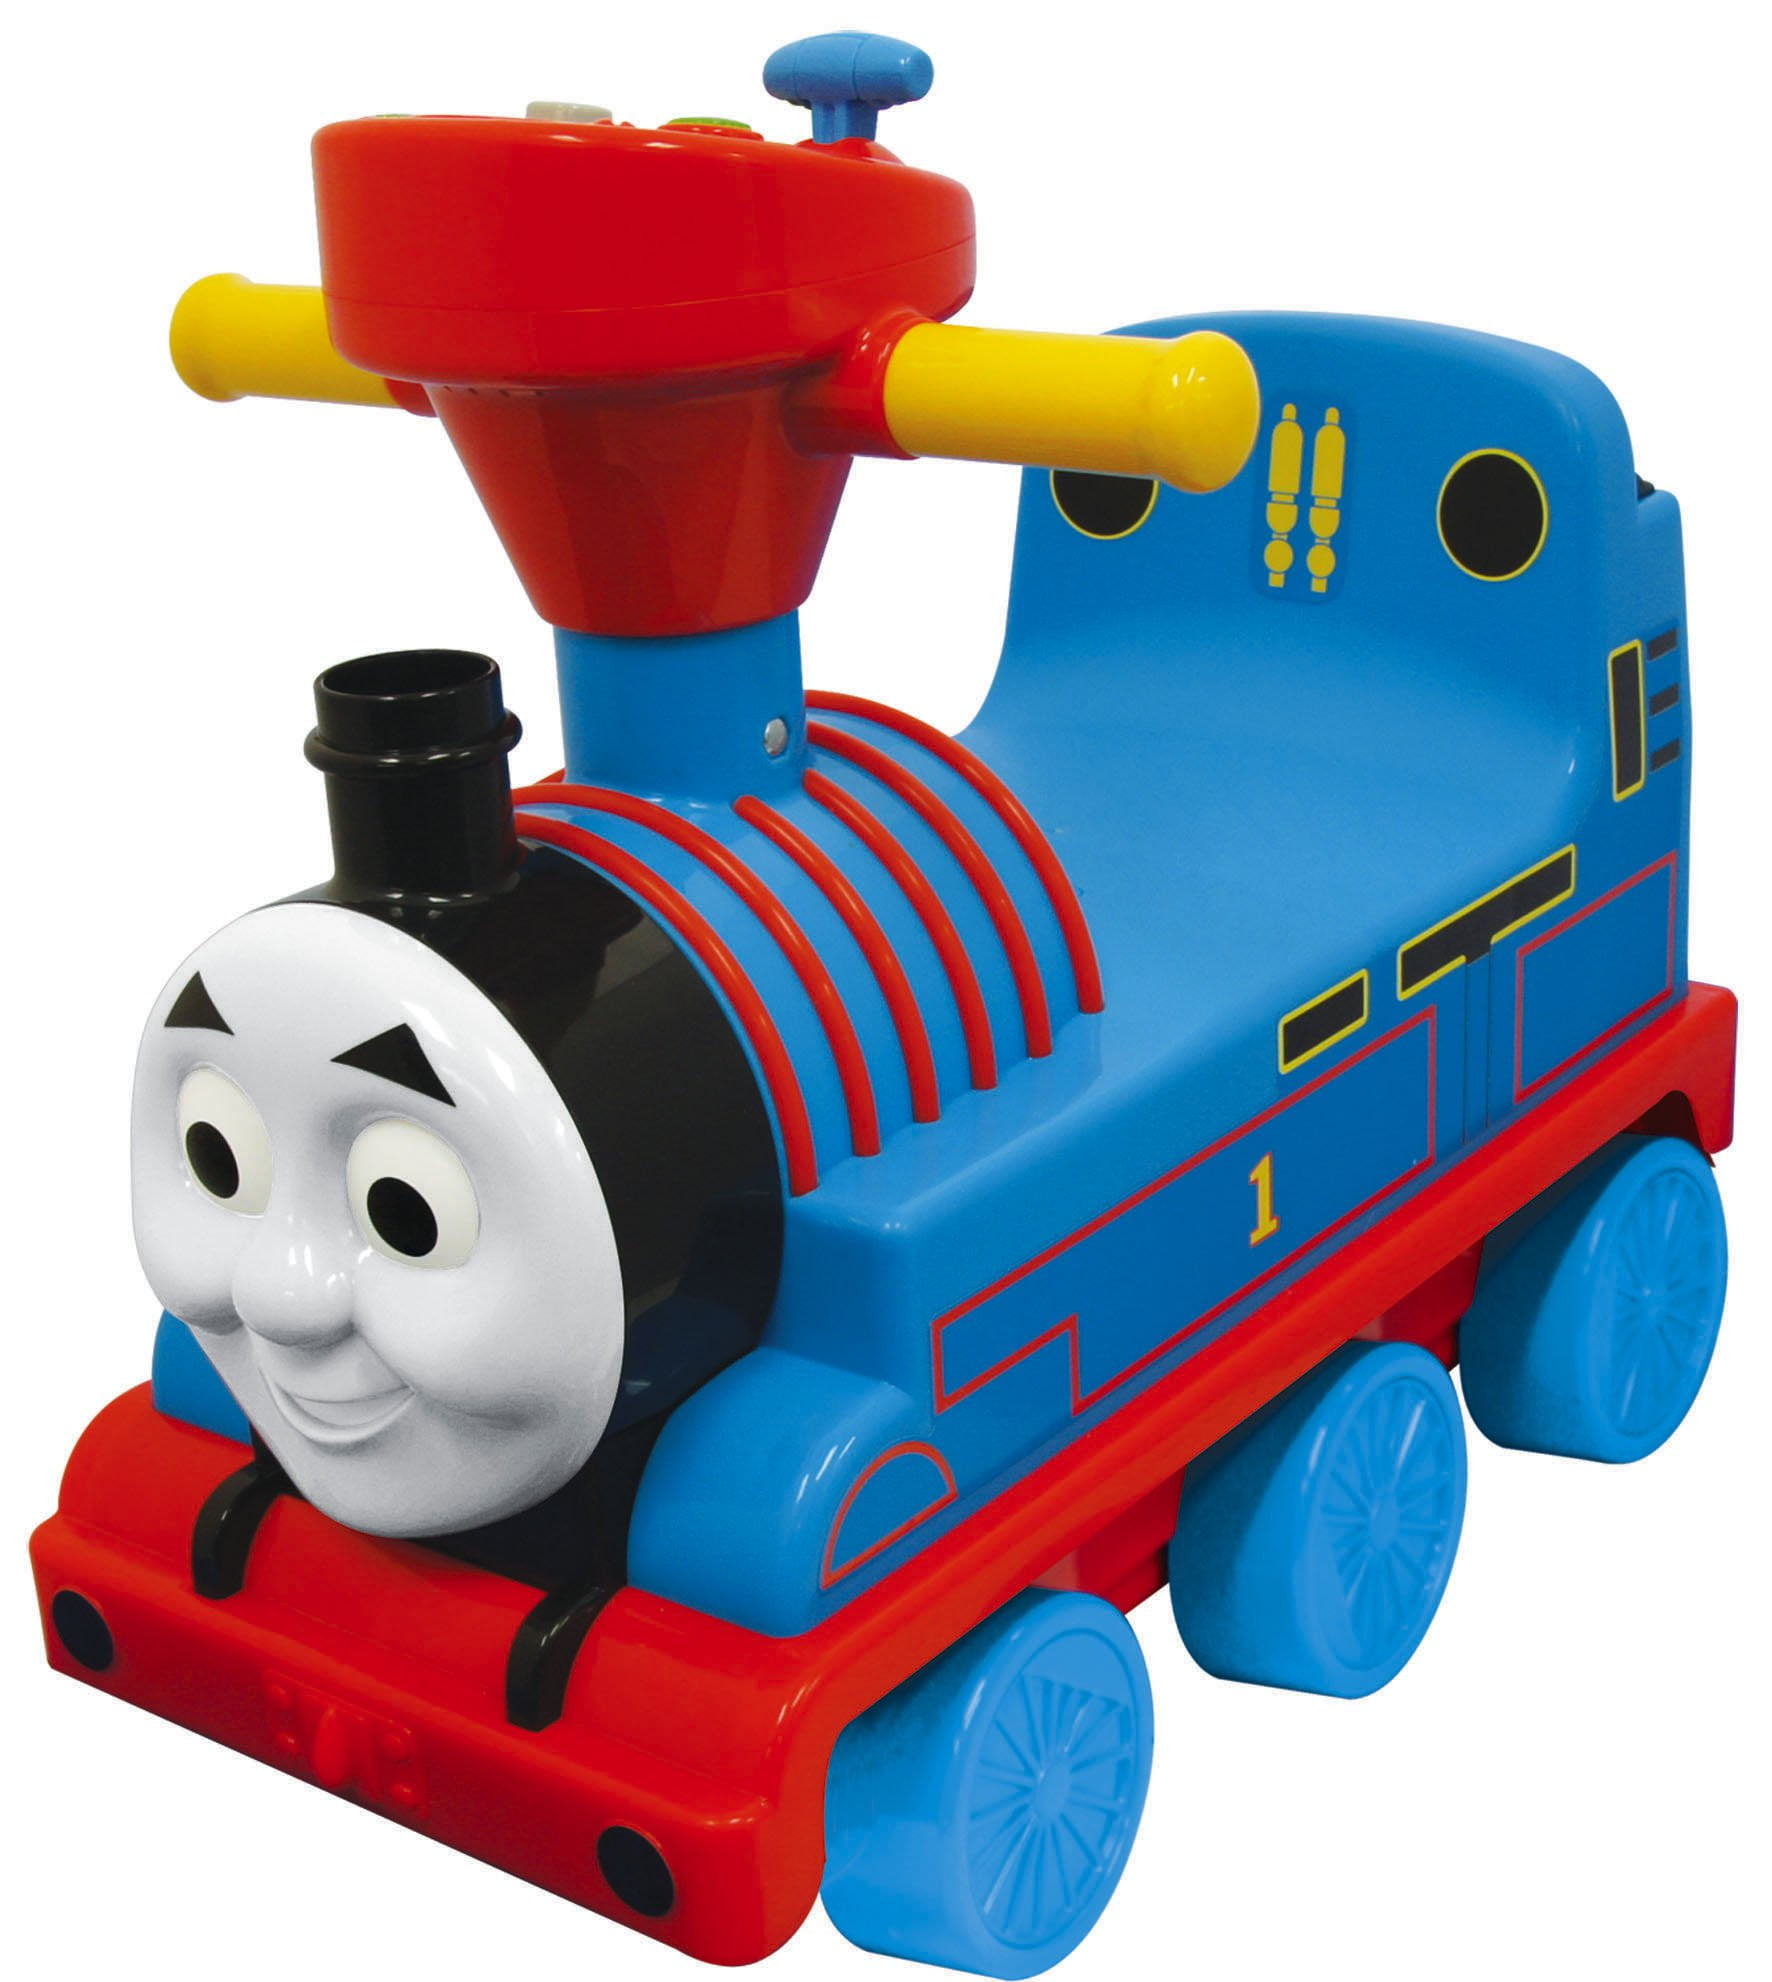 Thomas the train toys